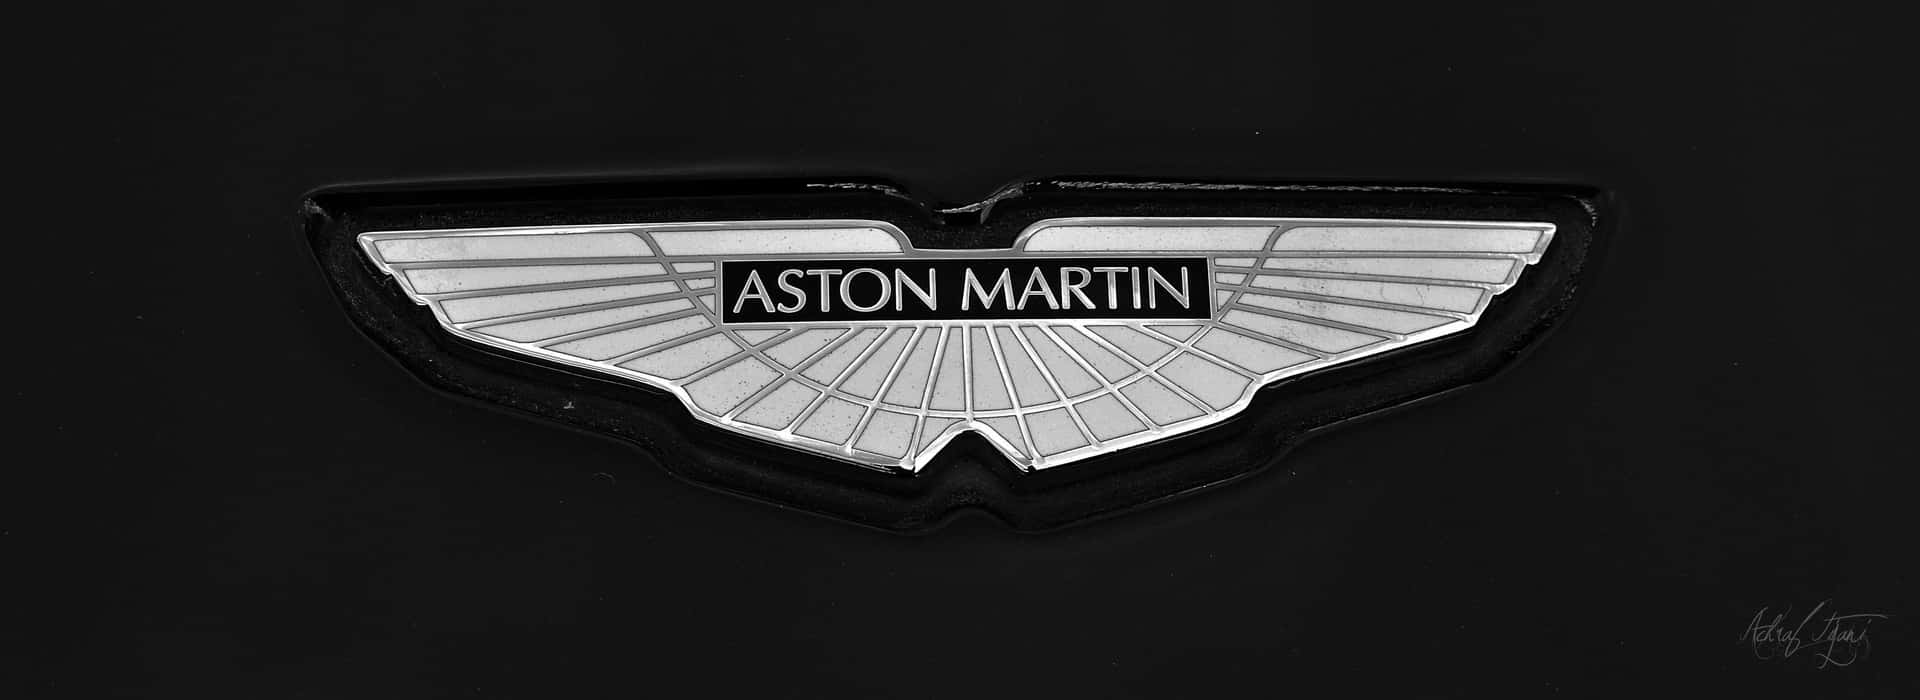 Genießensie Den Luxus Eines Aston Martin.